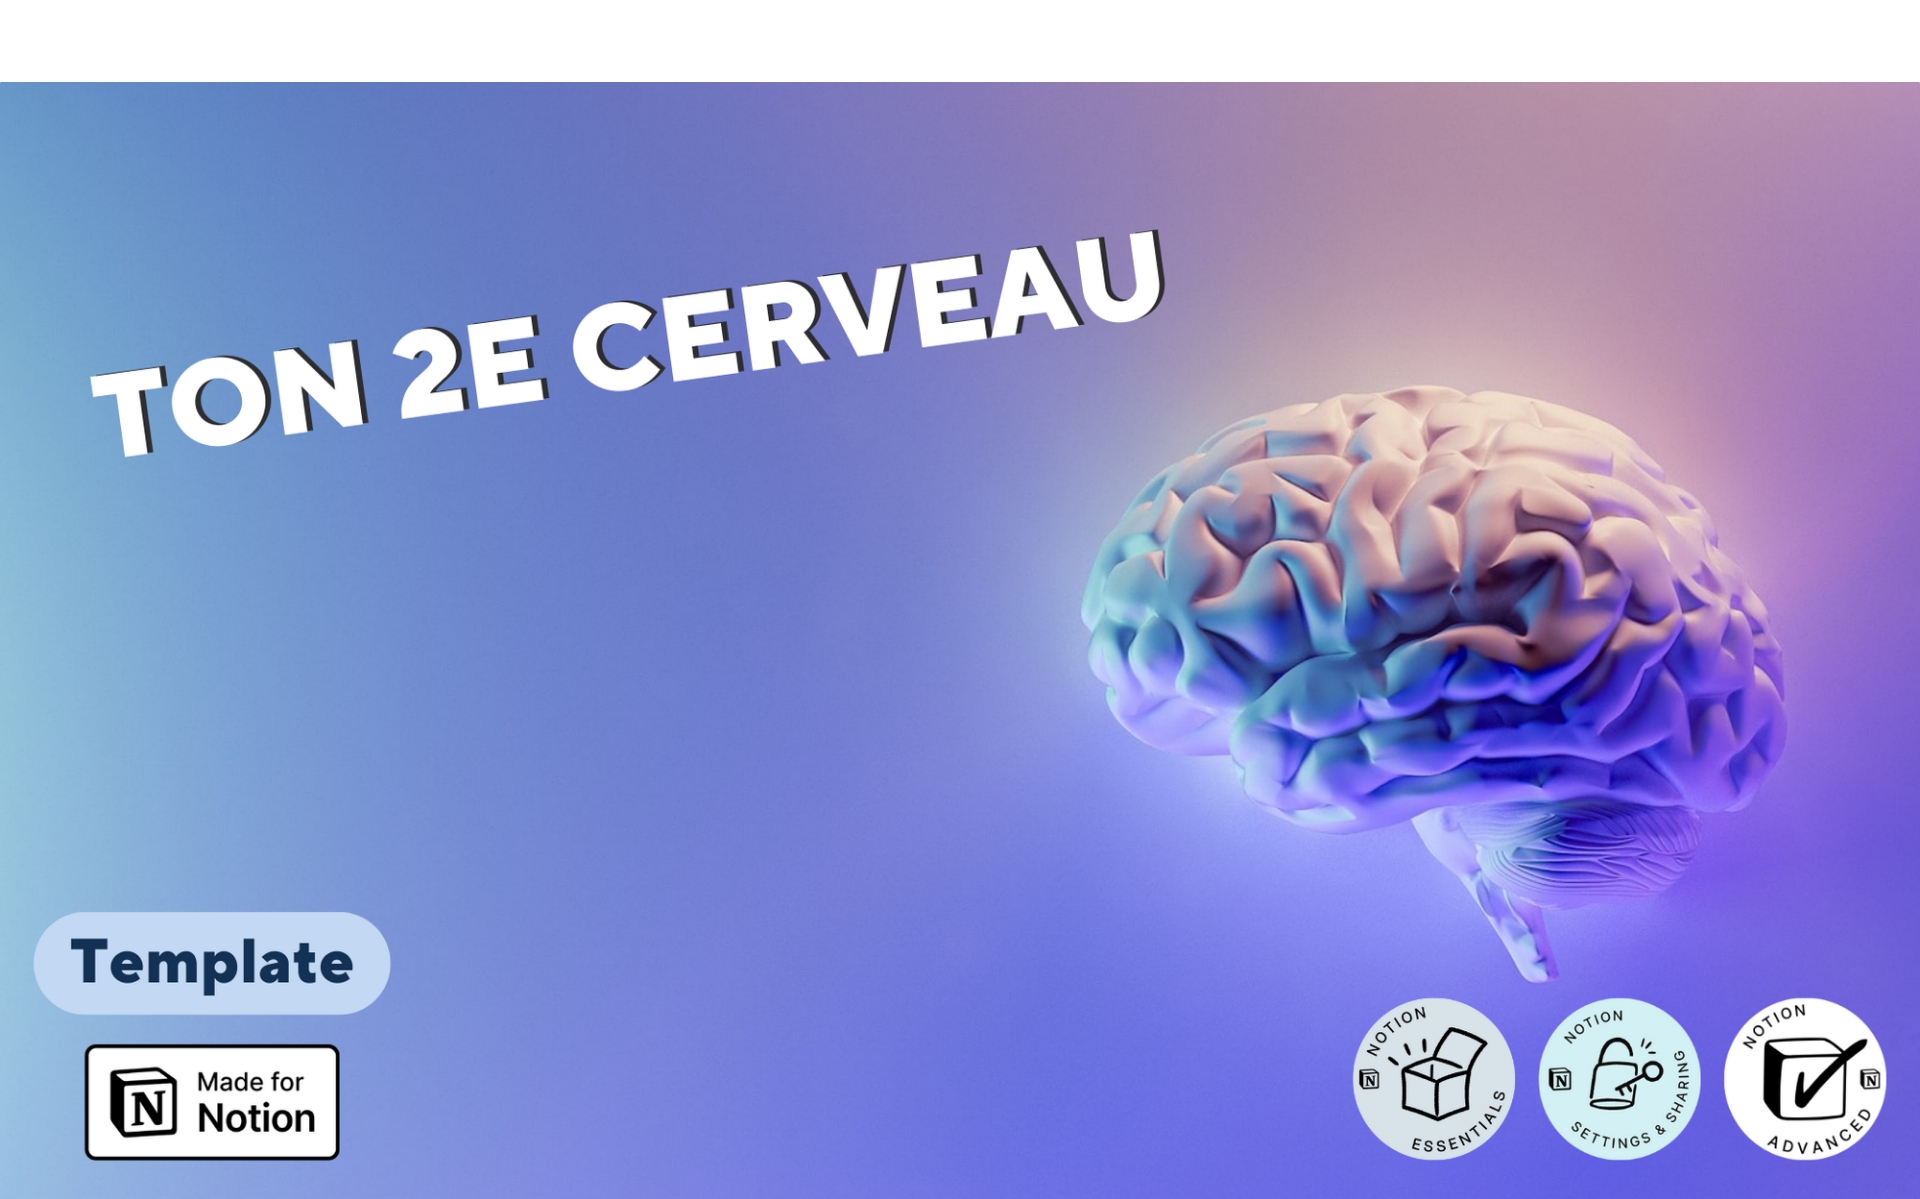 A template preview for 2e cerveau - Gestion d’infos et ressources